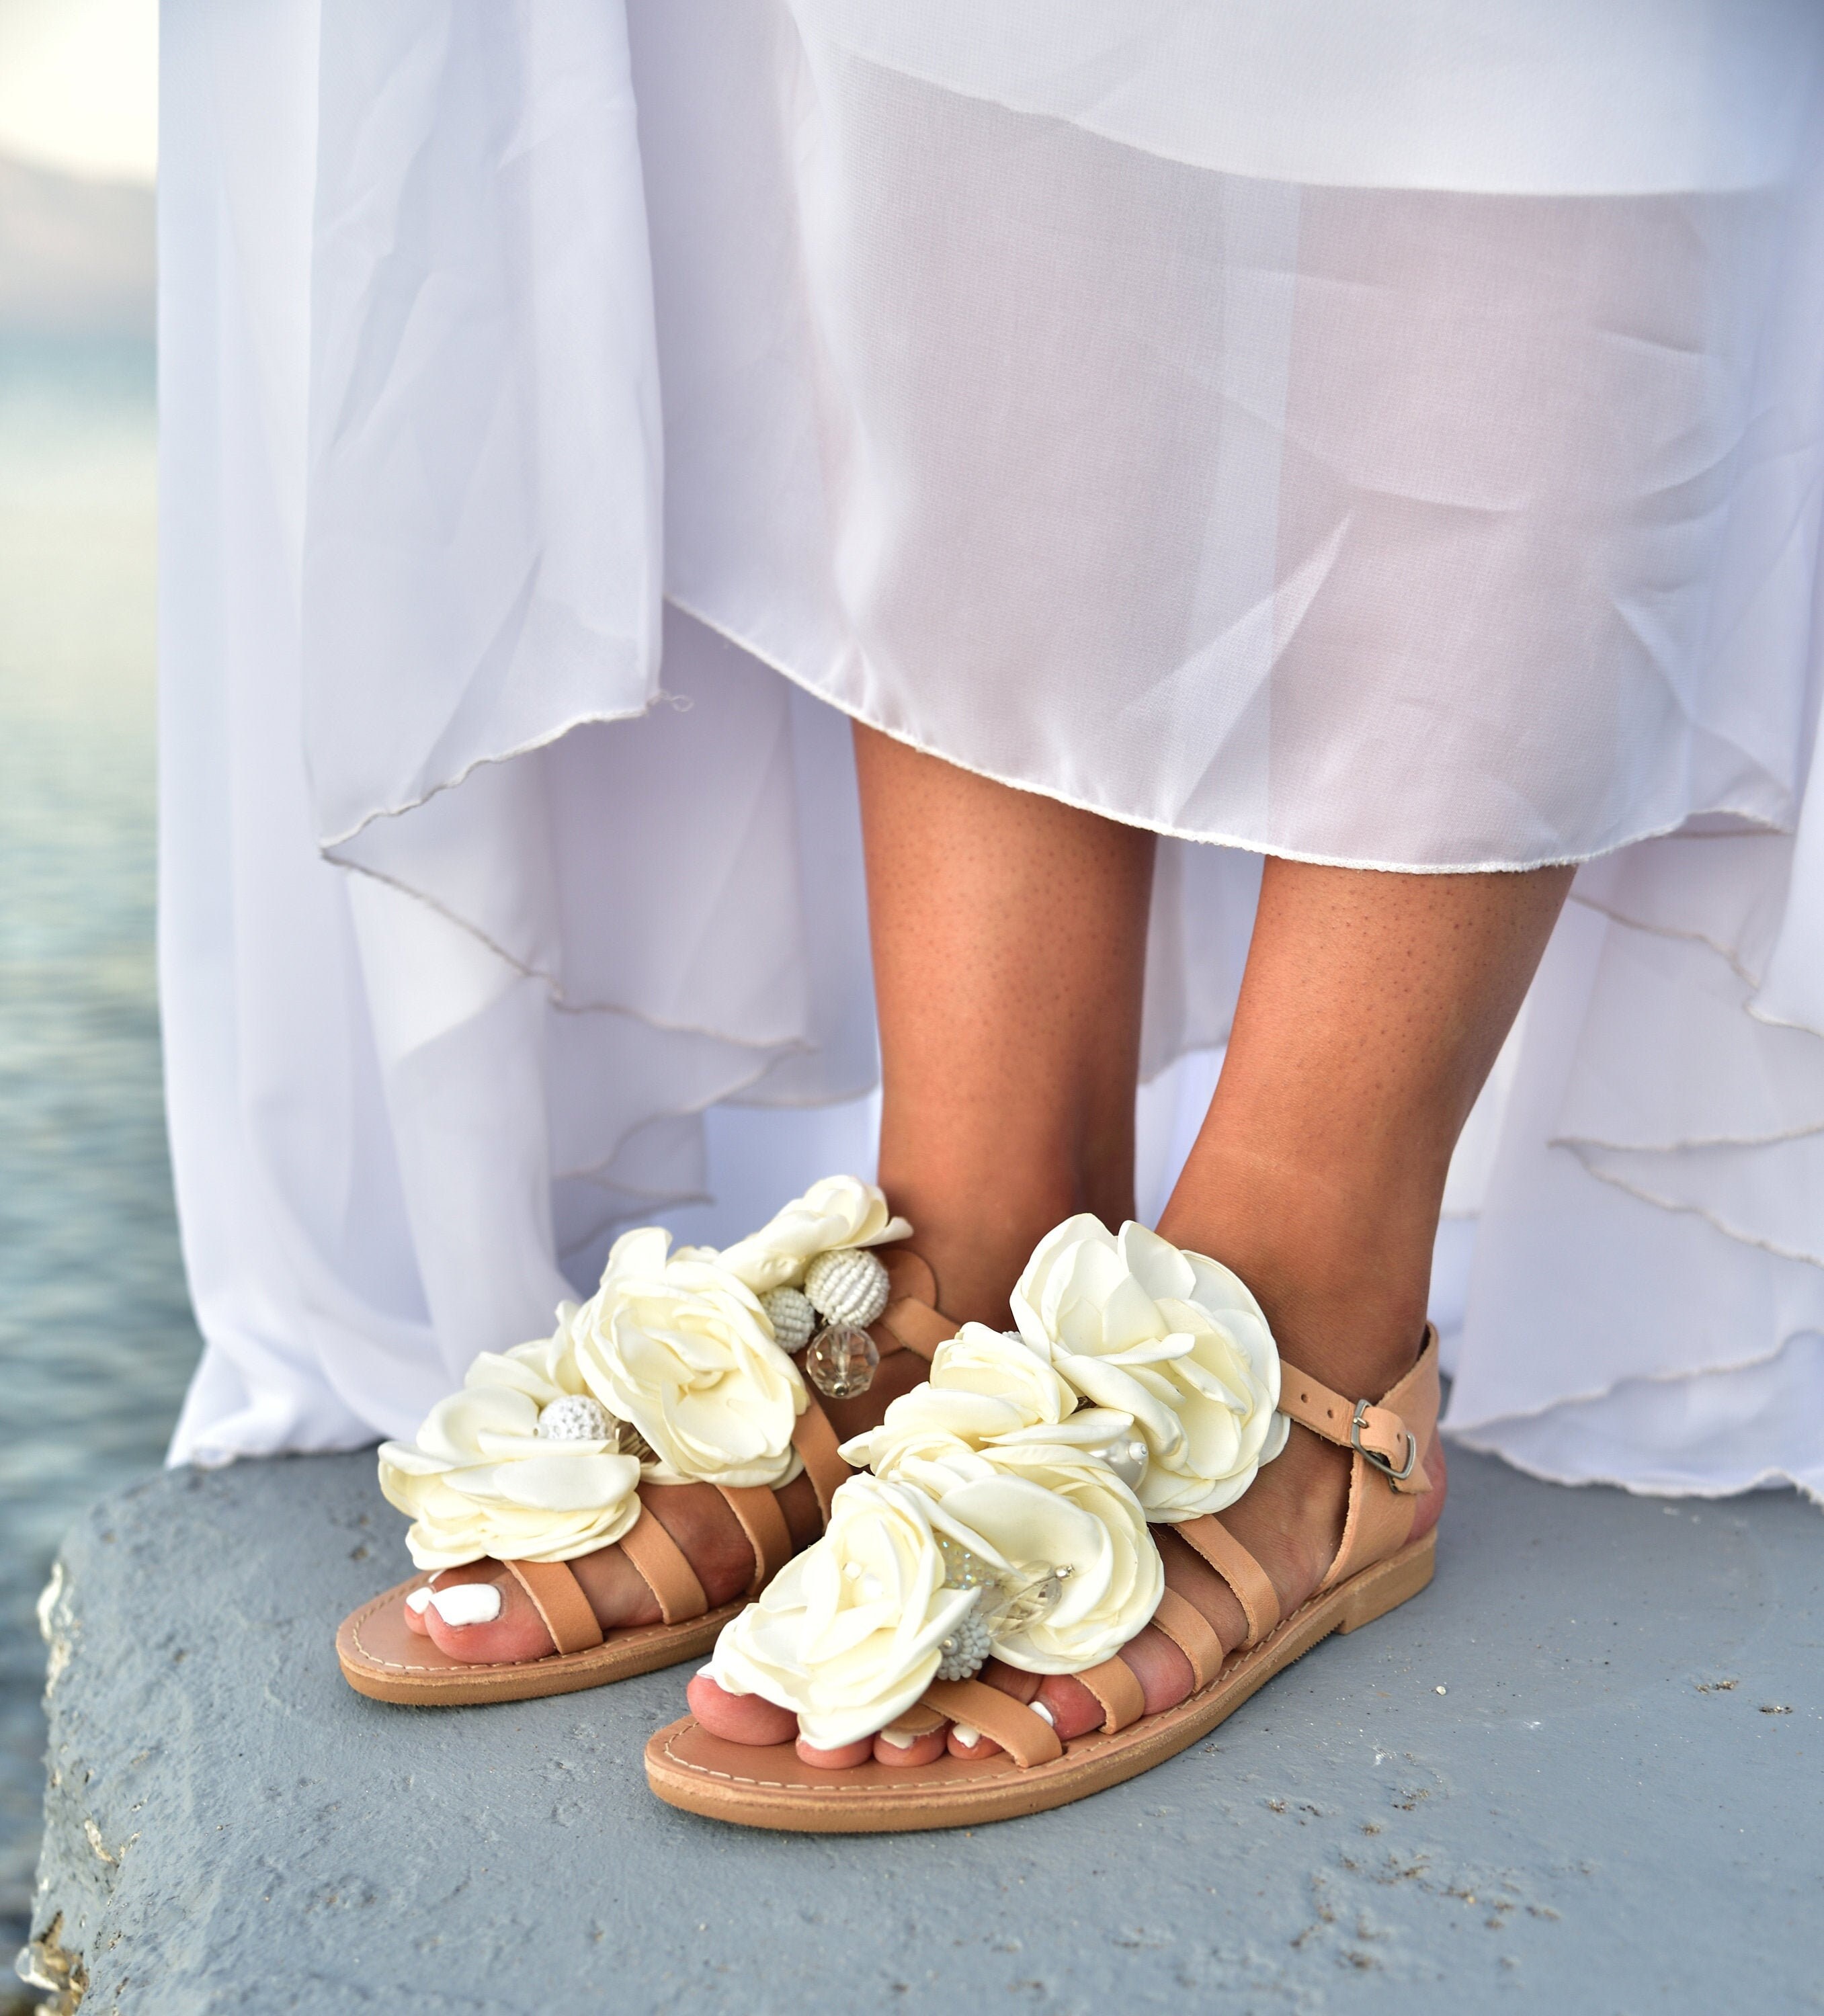 Wedding Sandals Hochzeit Sandalen handmade sandals | Etsy